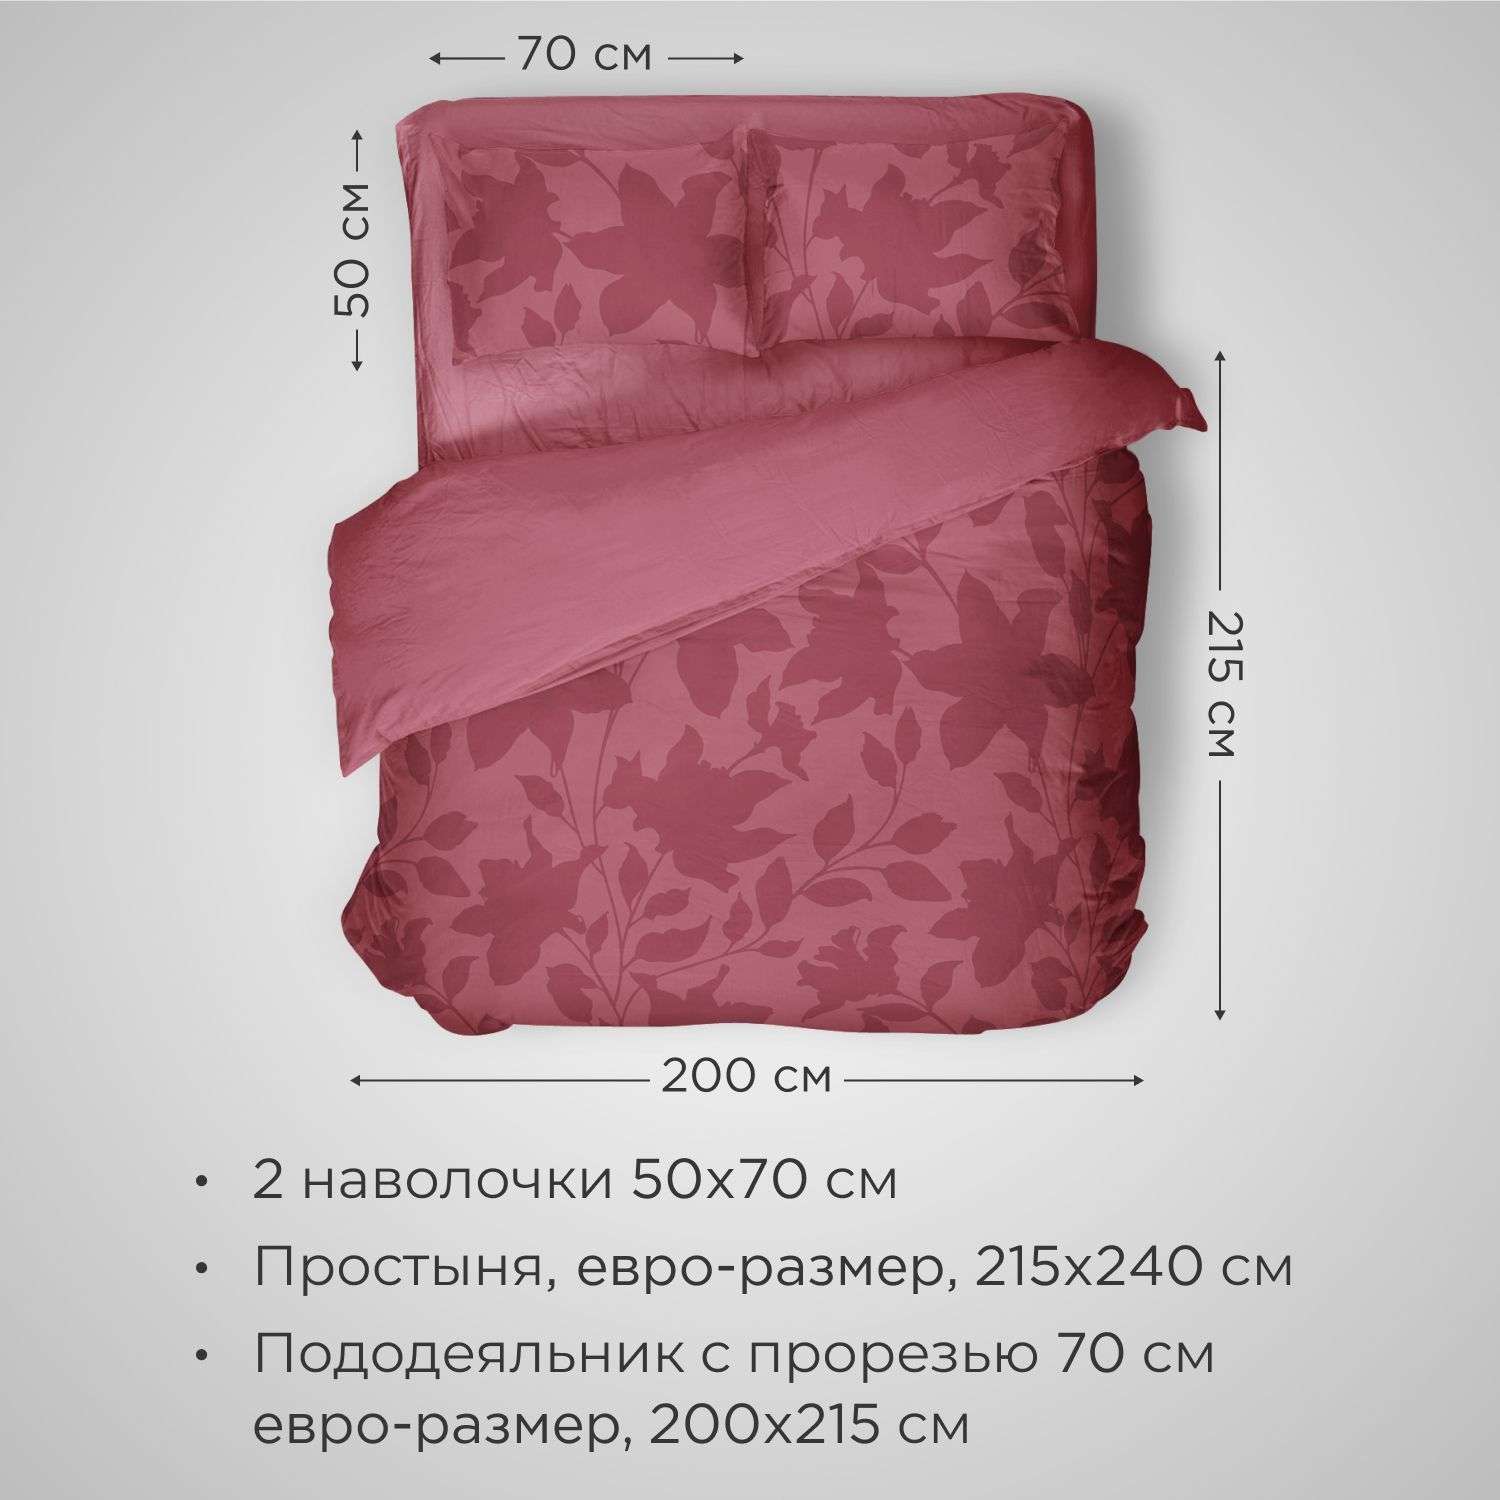 Комплект постельного белья SONNO URBAN FLOWERS евро-размер цвет Цветы светлый гранат - фото 2